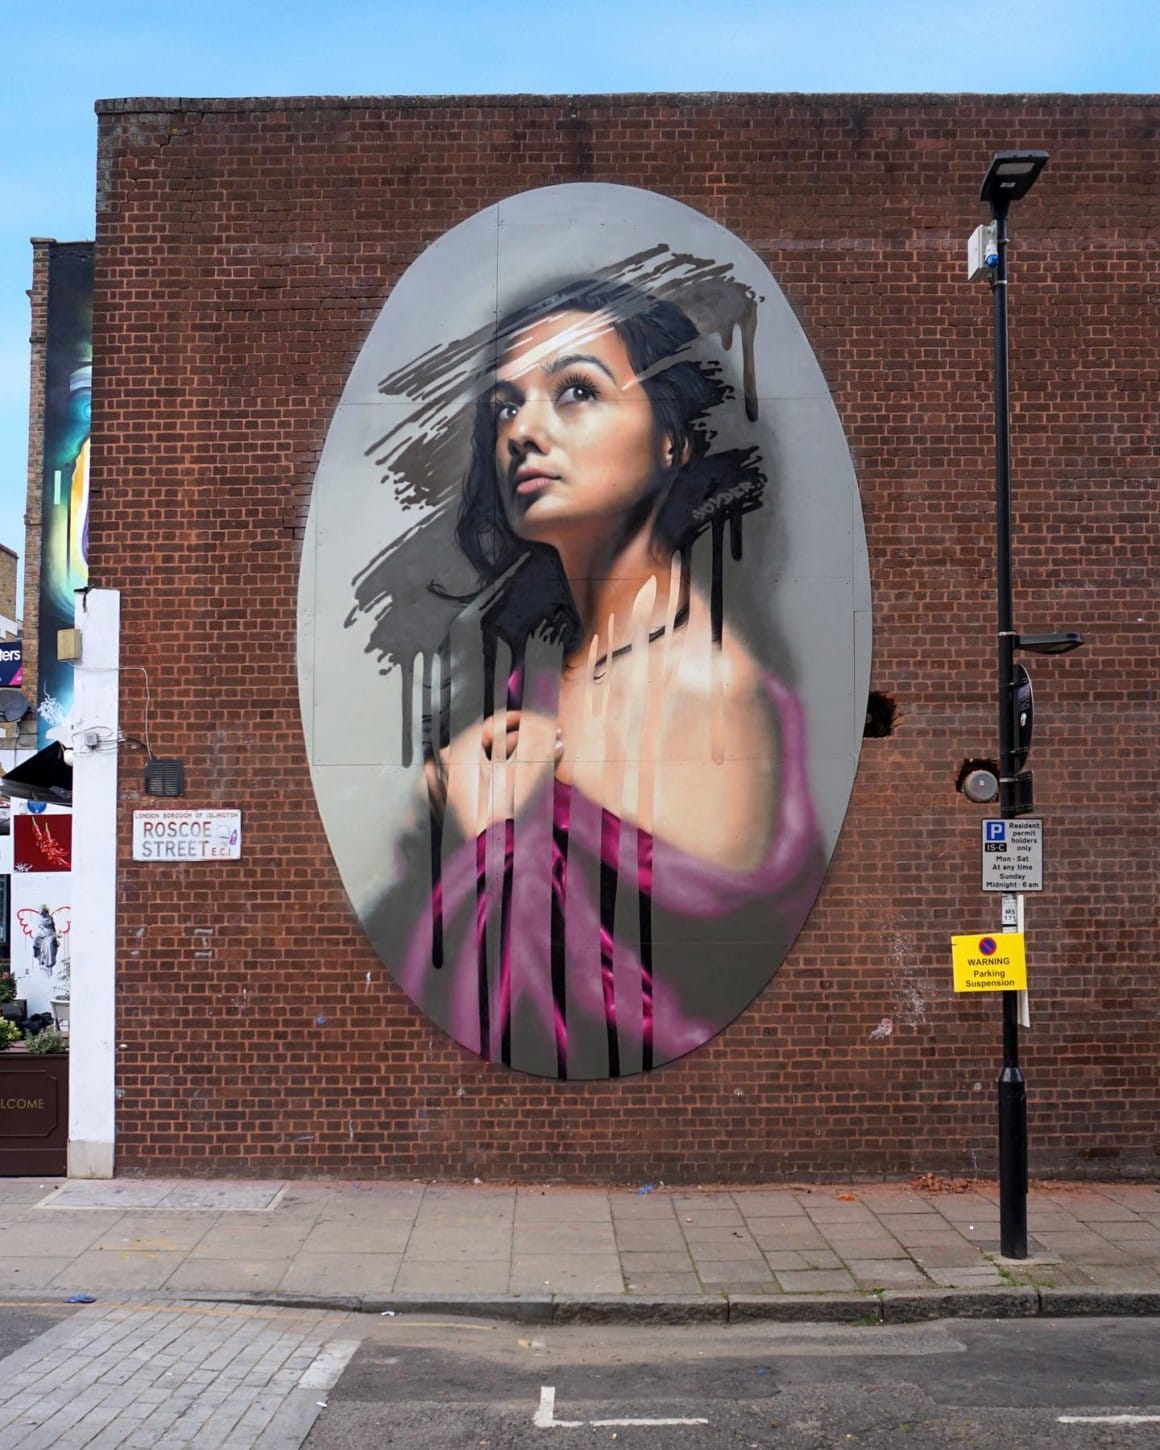 grande peinture murale de forme ovale rappelant un cadre, sur un mur dans la ville, avec une femme et une impression de traces faites sur une fenêtre couverte de buée